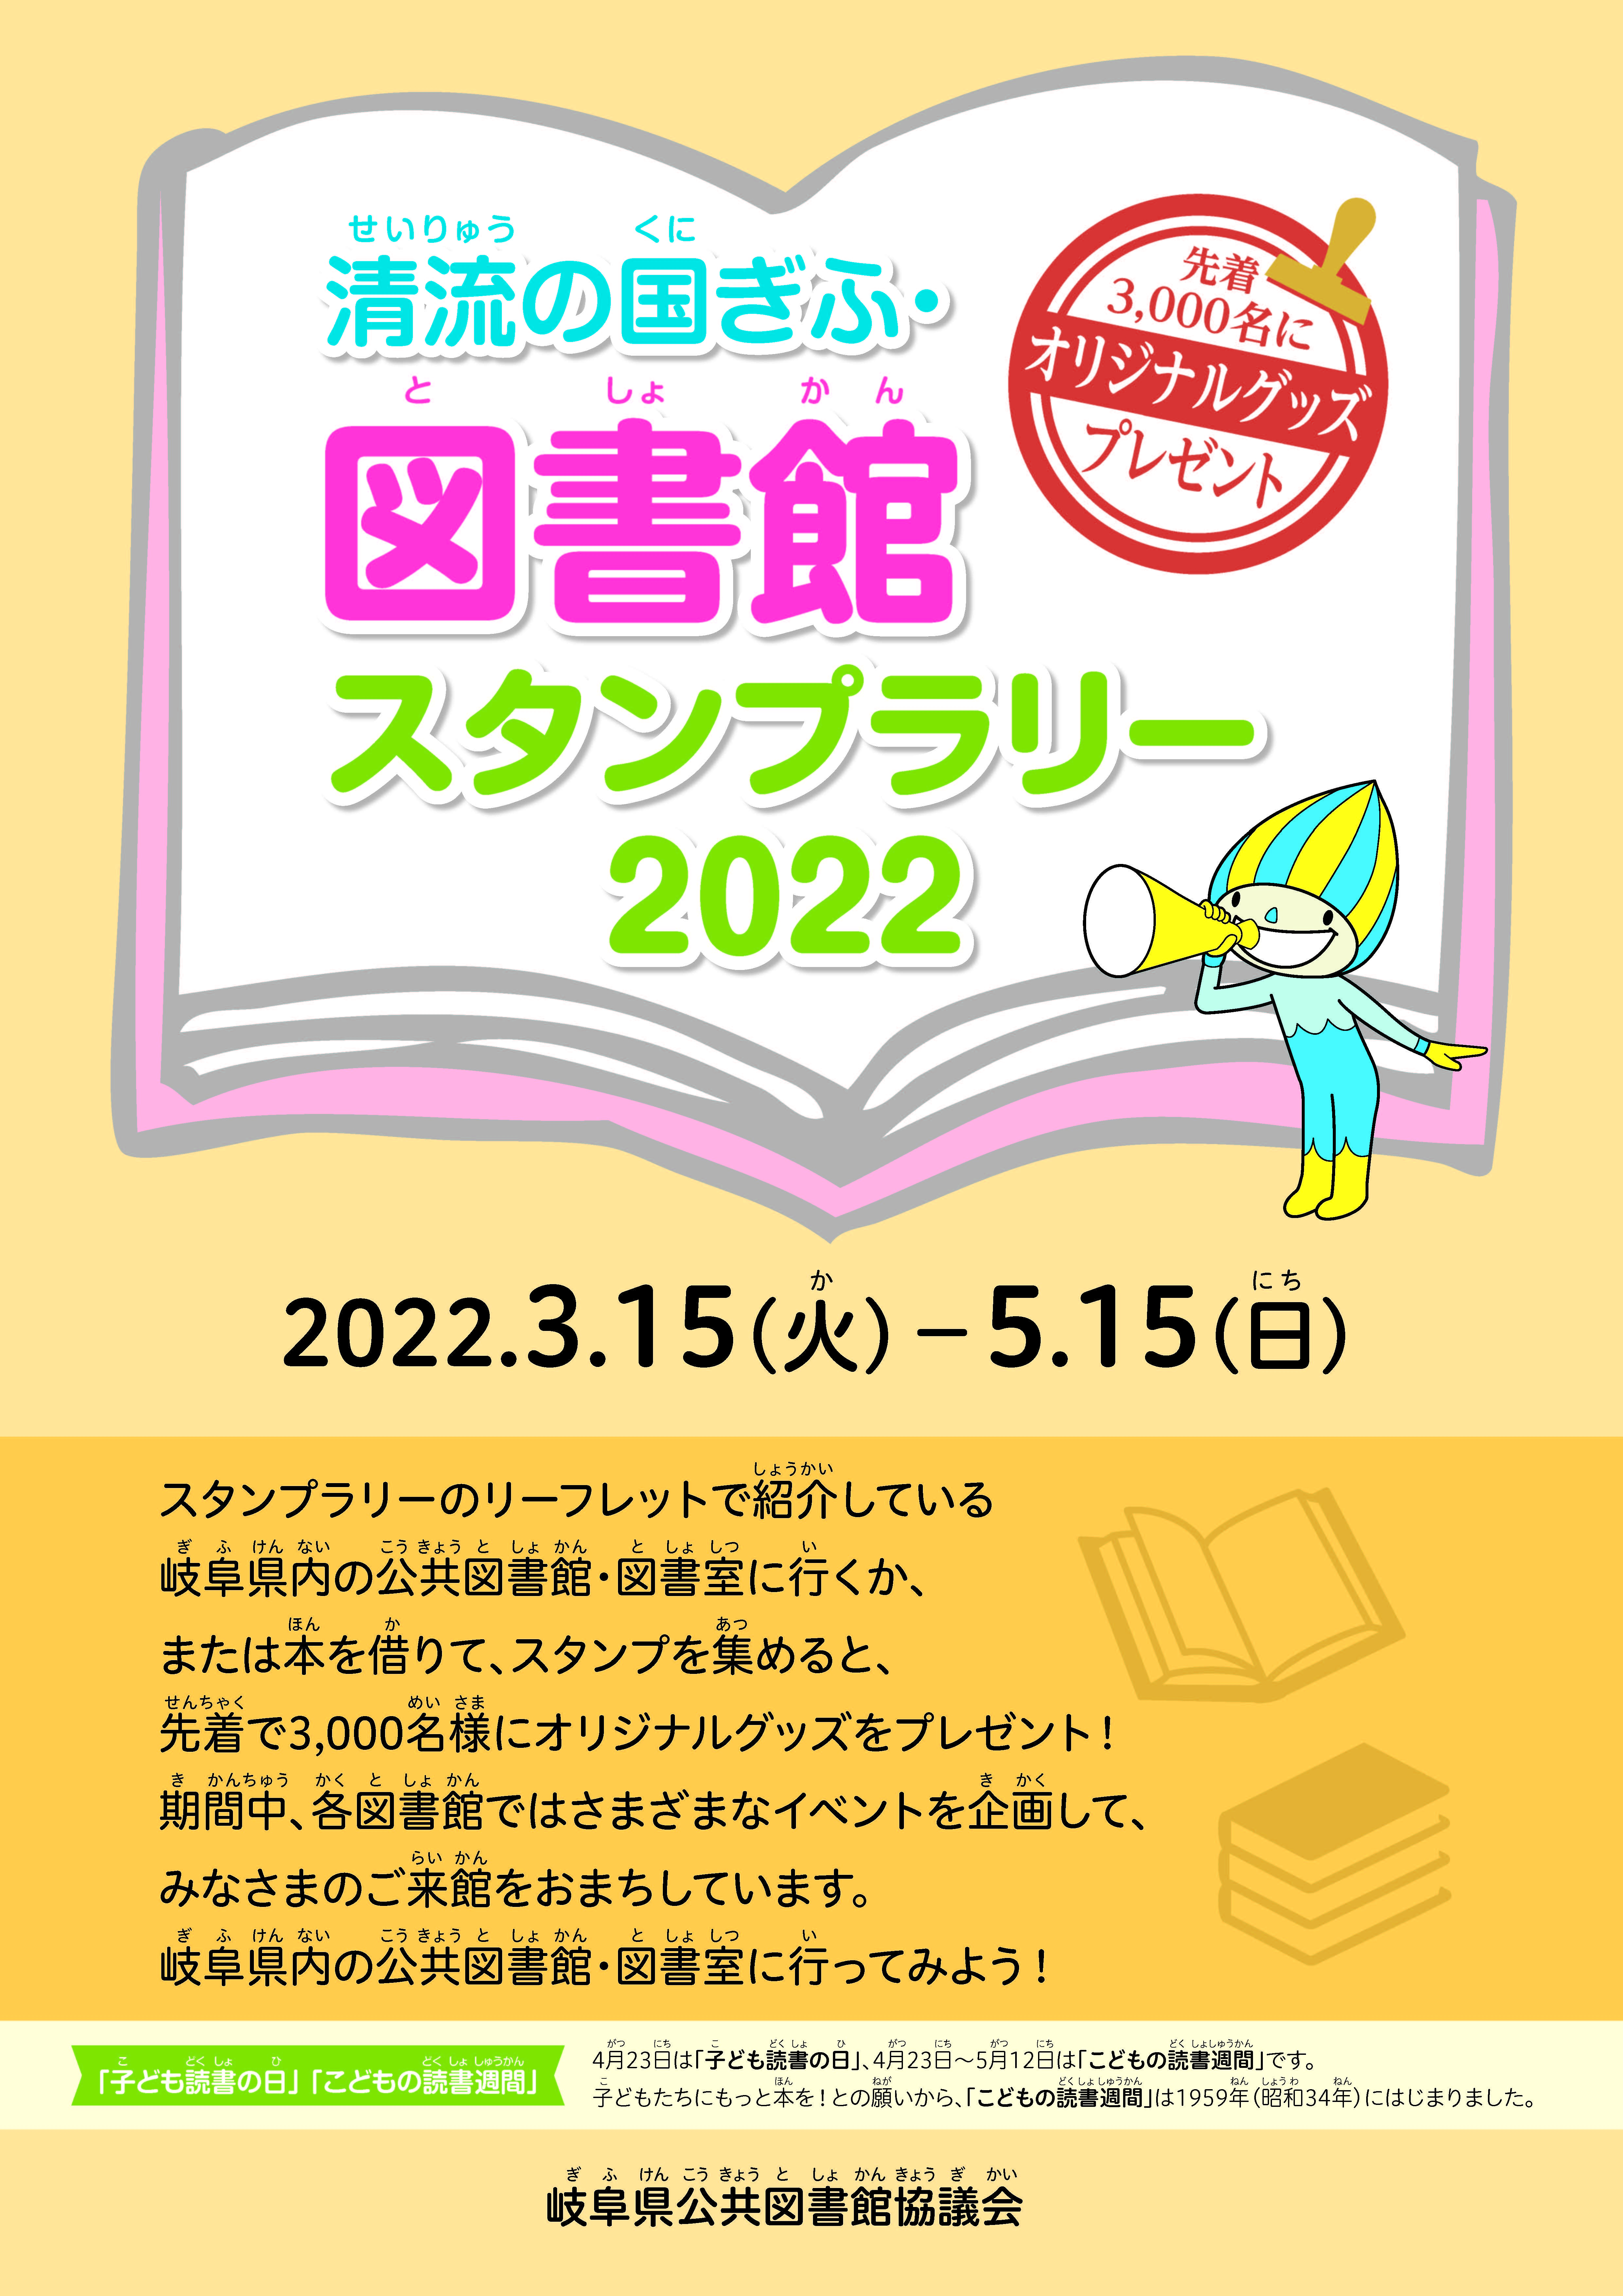 「清流の国ぎふ・図書館スタンプラリー2022」 チラシ